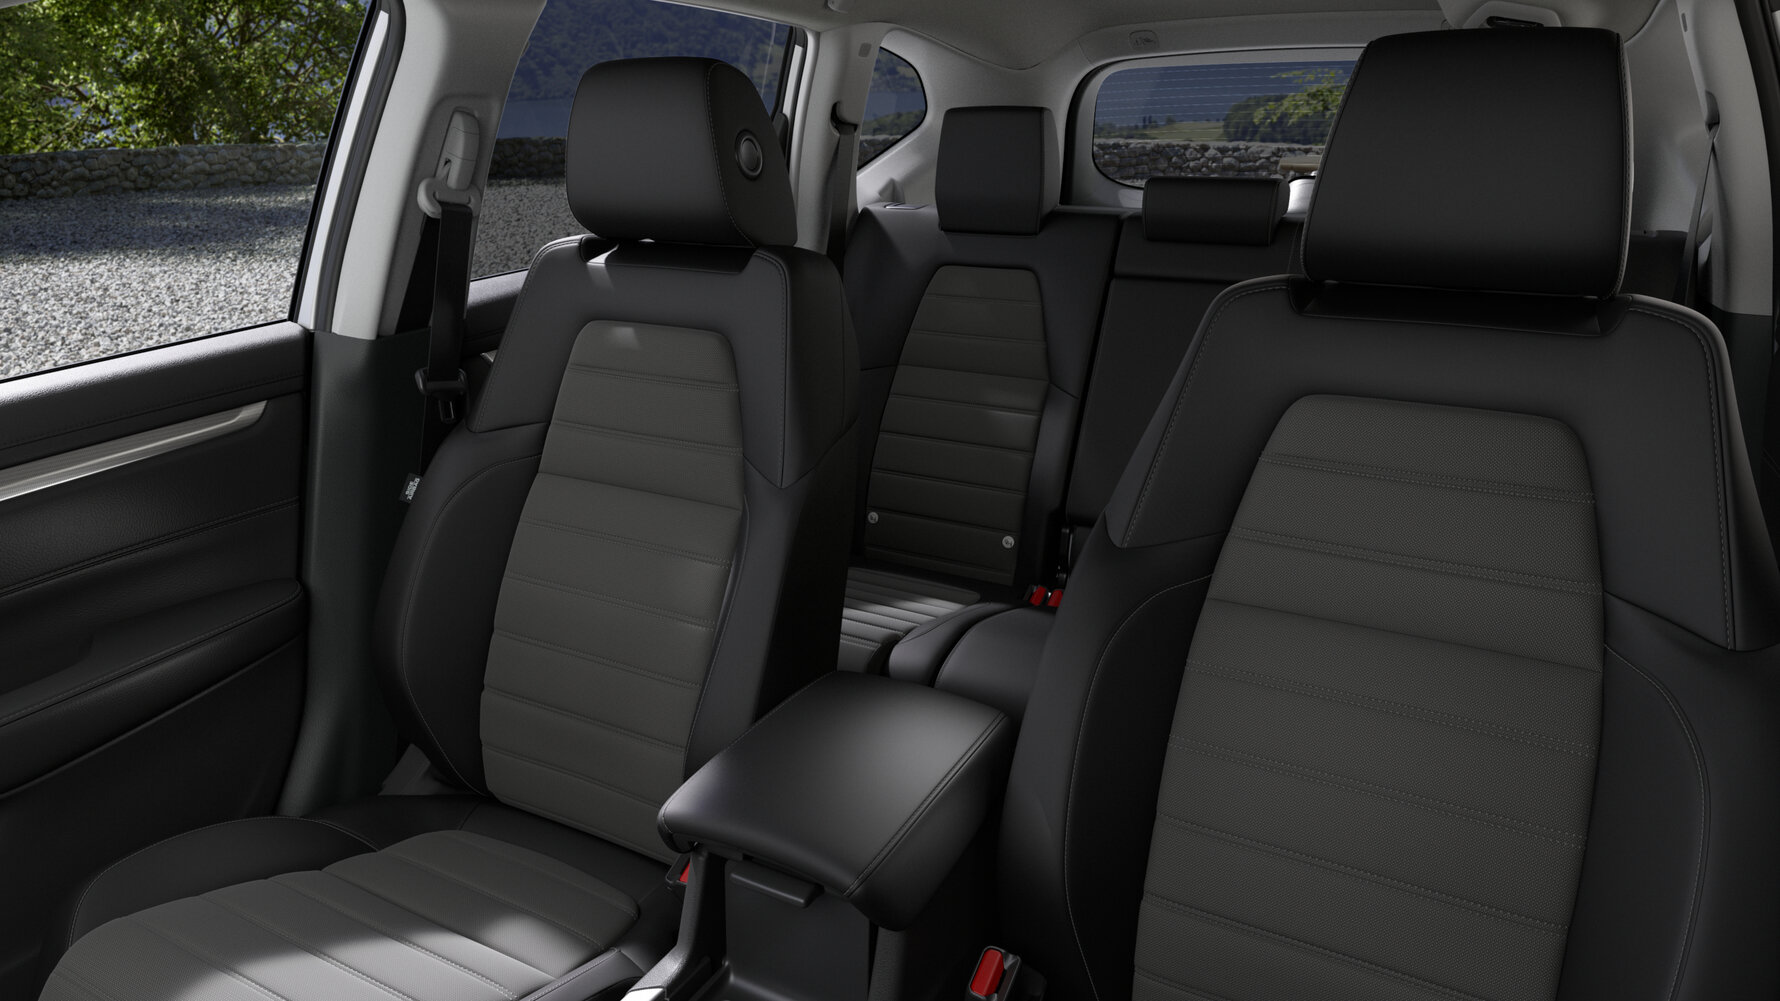 Renting Finders Honda CR-V Elegance Navi Blanco Perlado SUV Híbrido Automático ECO Asientos